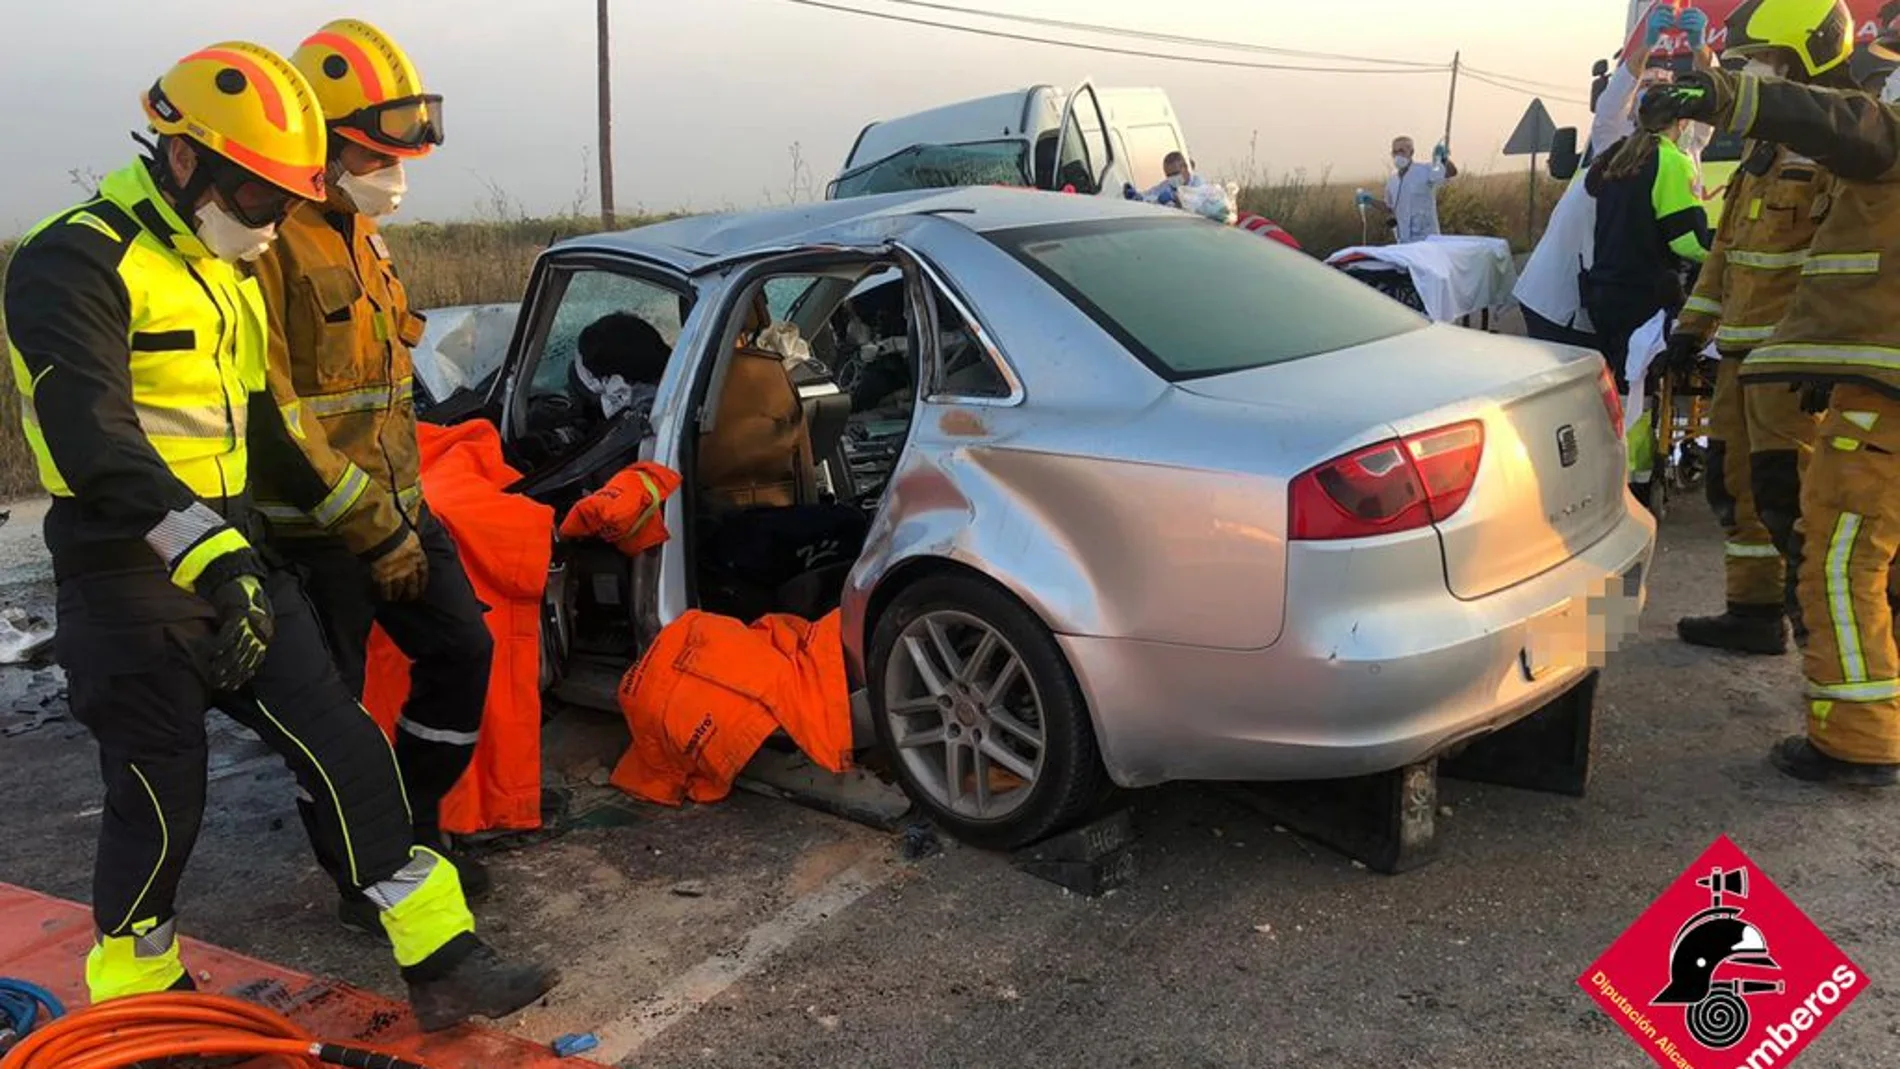 Mueren dos personas y otras cuatro resultan heridas en un accidente de tráfico en Alicante